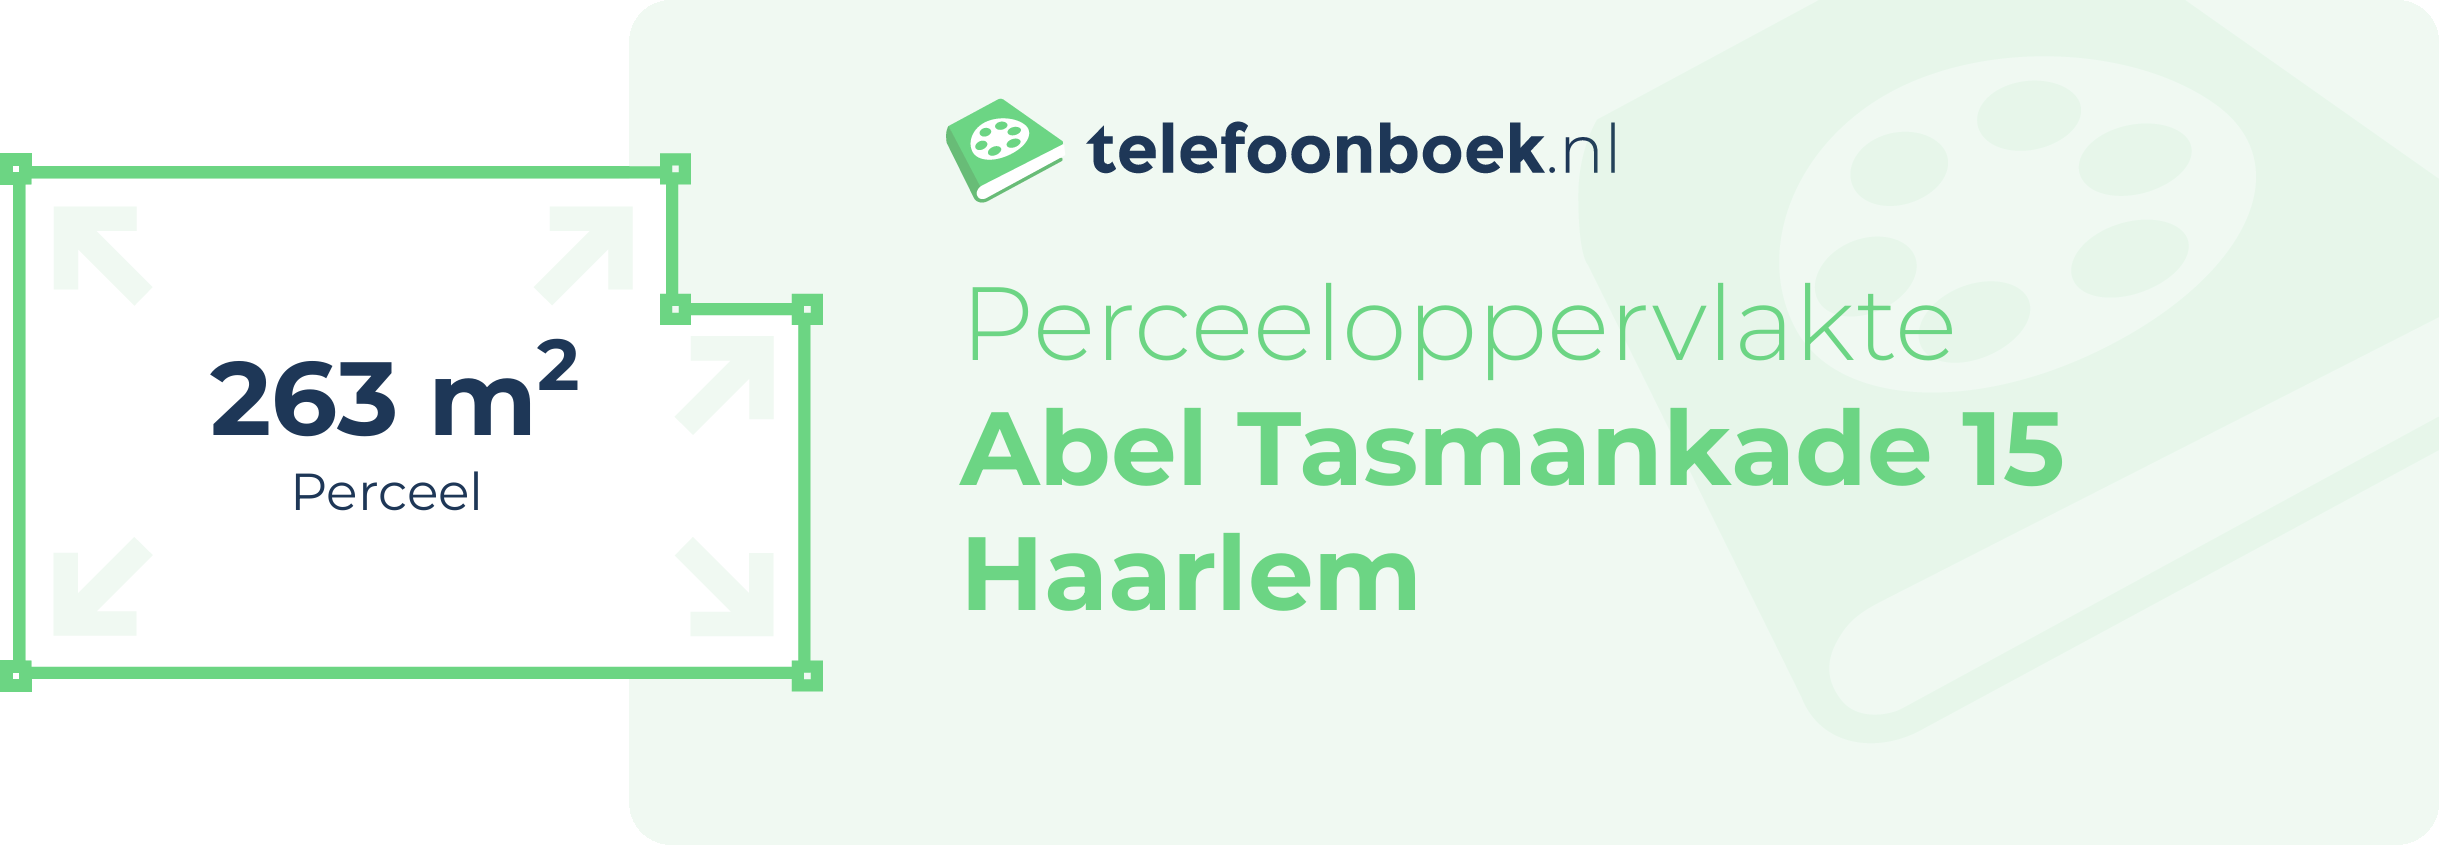 Perceeloppervlakte Abel Tasmankade 15 Haarlem